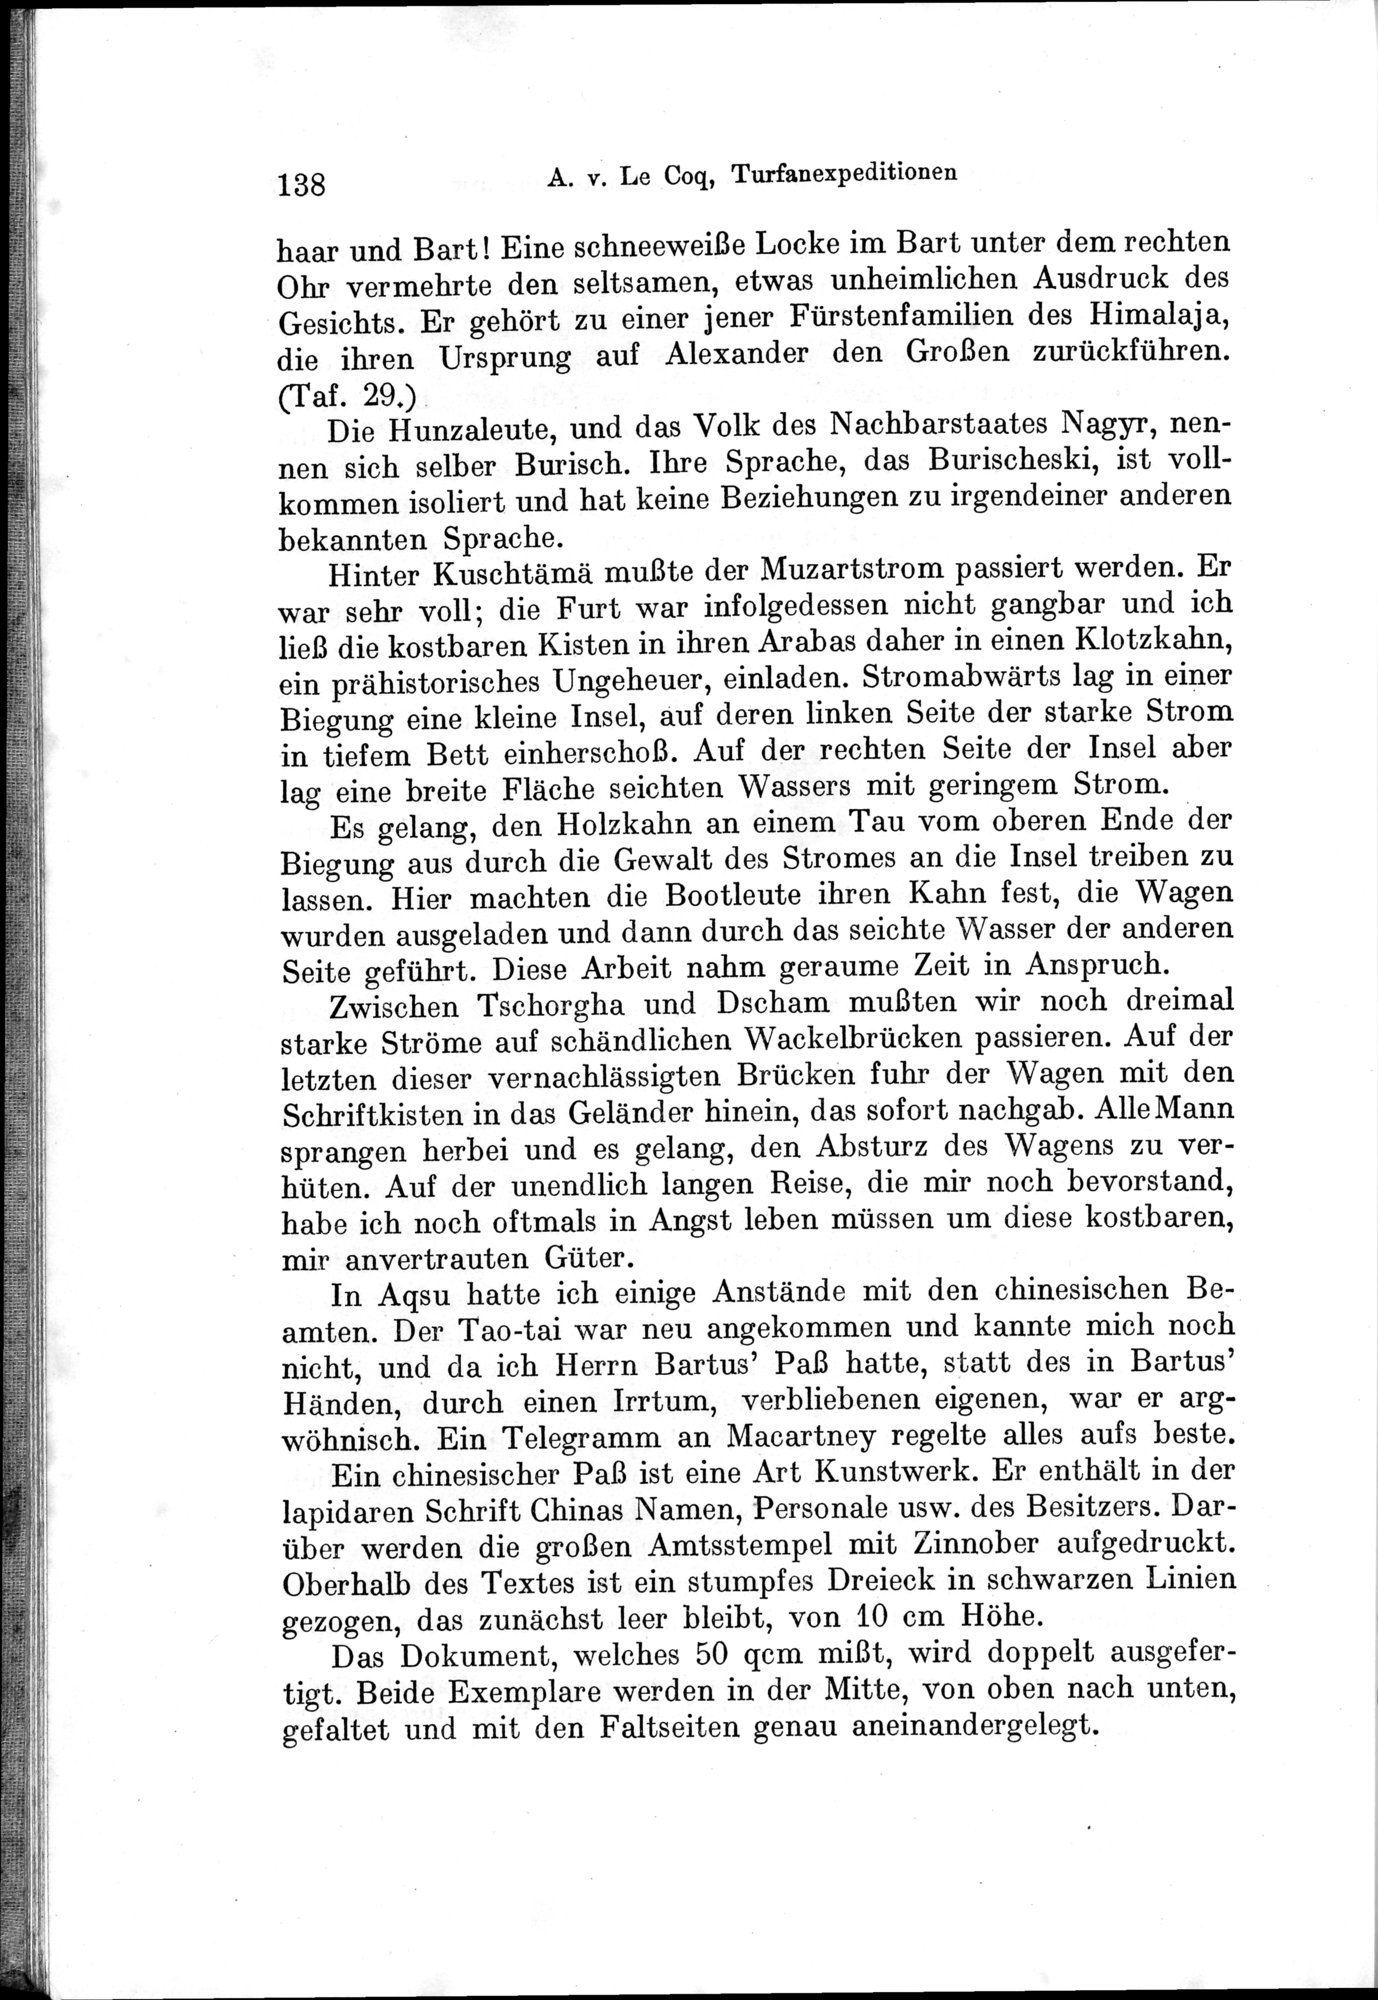 Auf Hellas Spuren in Ostturkistan : vol.1 / Page 200 (Grayscale High Resolution Image)